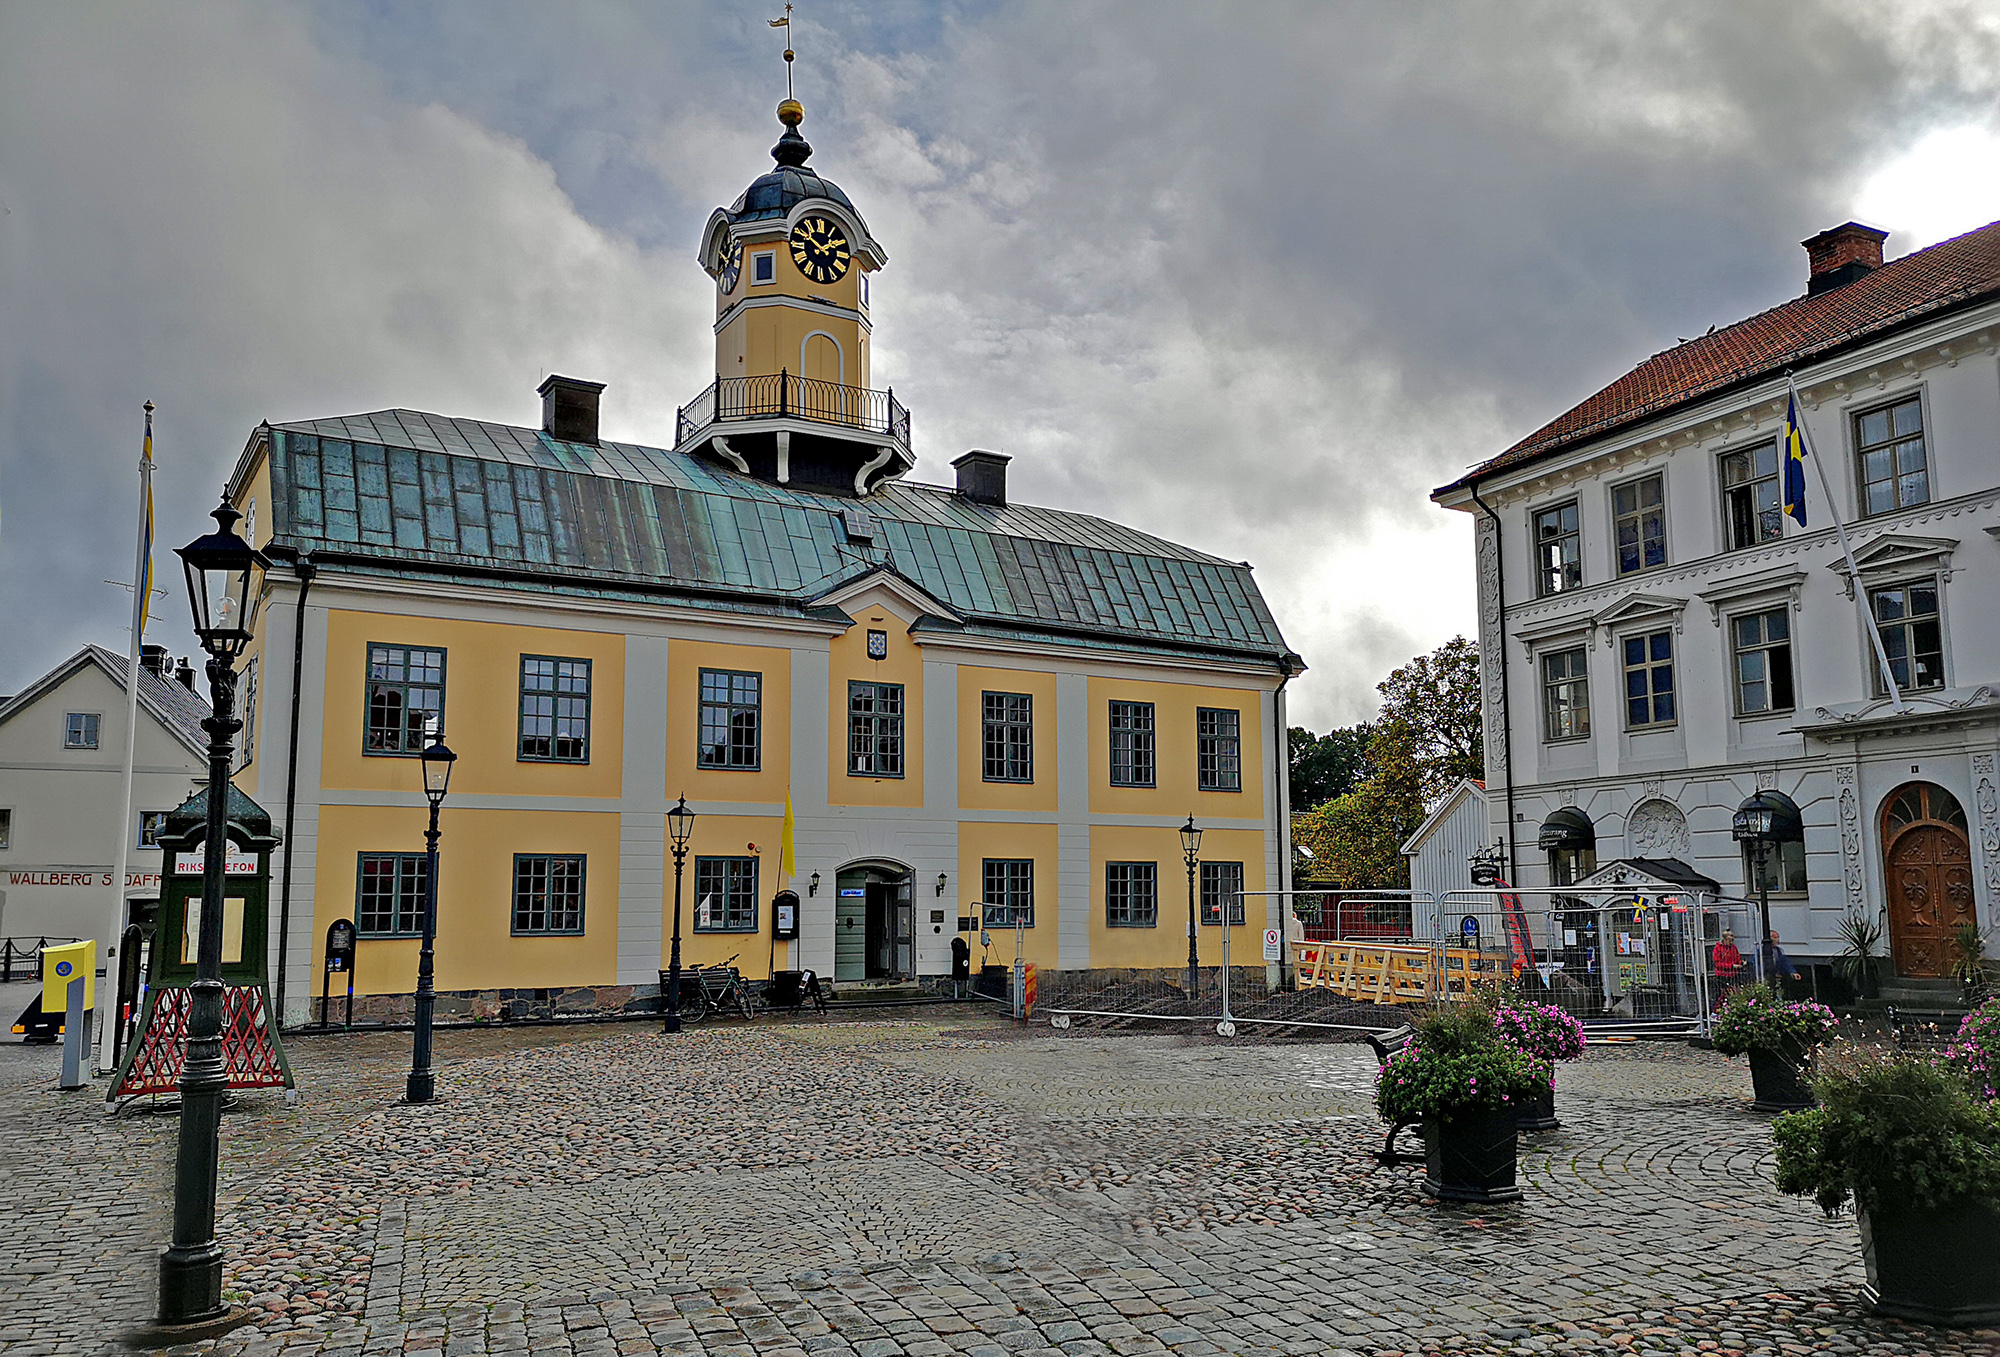 Är Rådhustorget i Söderköping Sveriges vackraste torg?